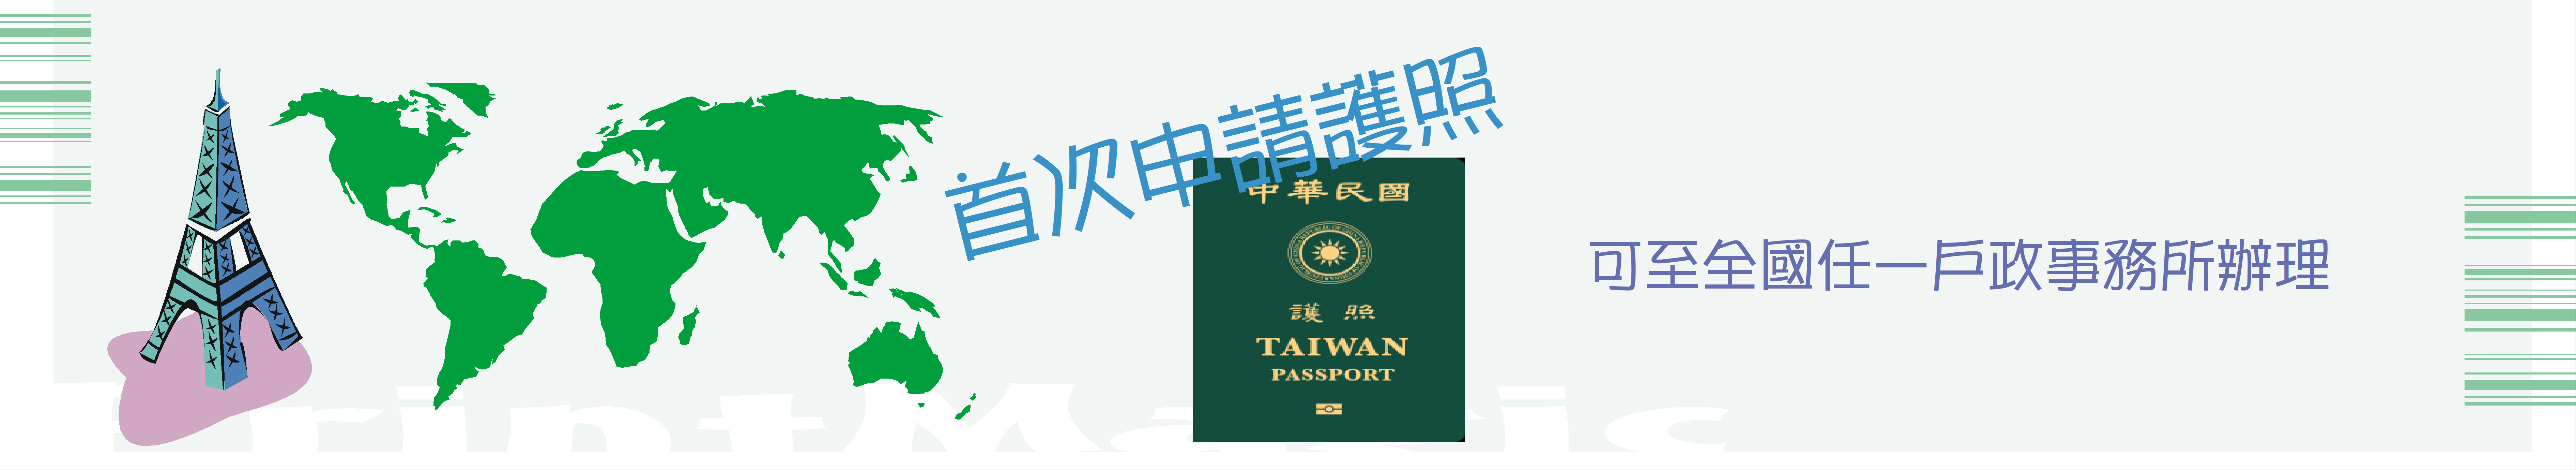 首次申辦護照 圖片